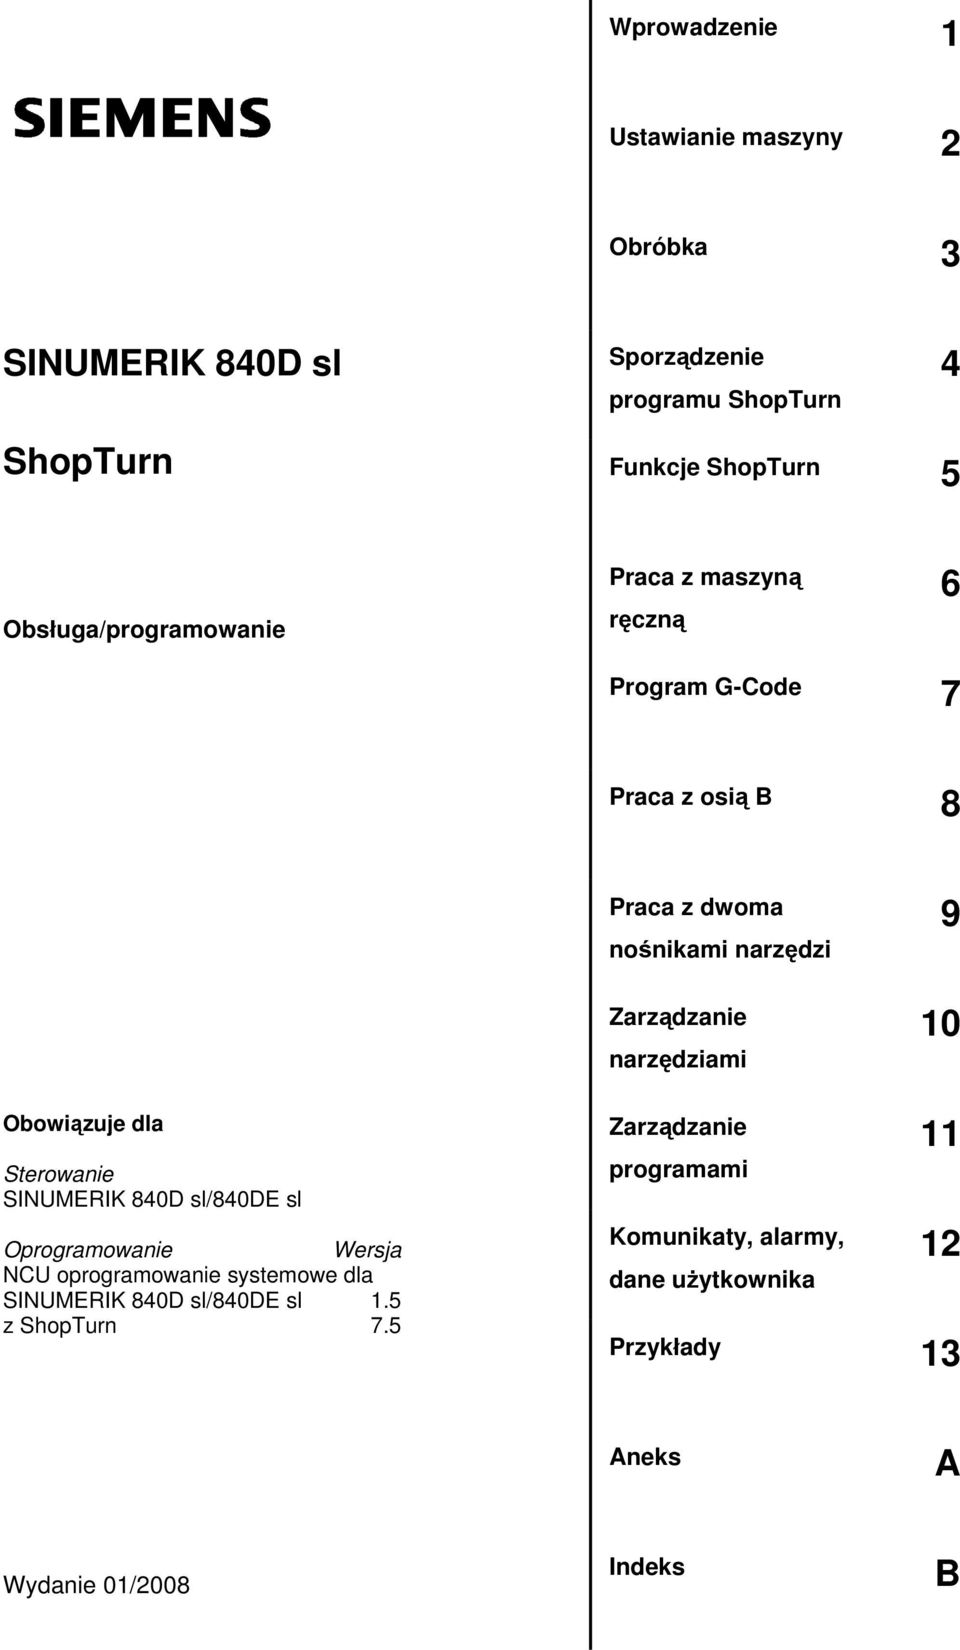 narzędziami 9 10 Obowiązuje dla Sterowanie SINUMERIK 840D sl/840de sl Oprogramowanie Wersja NCU oprogramowanie systemowe dla